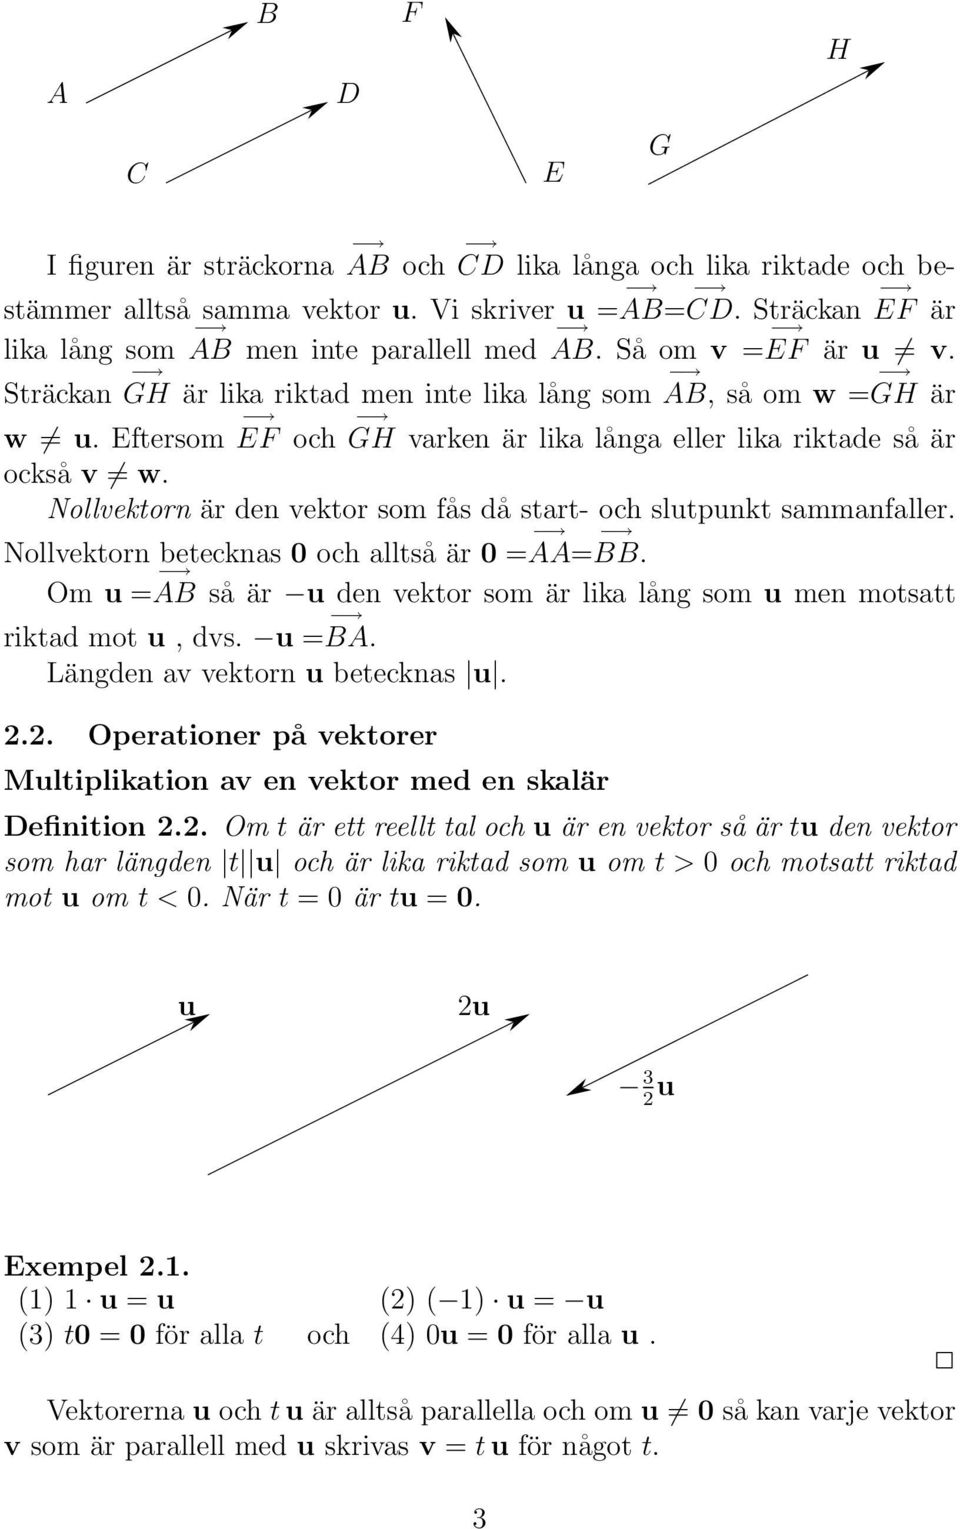 Nollvektorn är den vektor som fås då start- och slutpunkt sammanfaller. Nollvektorn betecknas 0 och alltså är 0 = AA= BB.